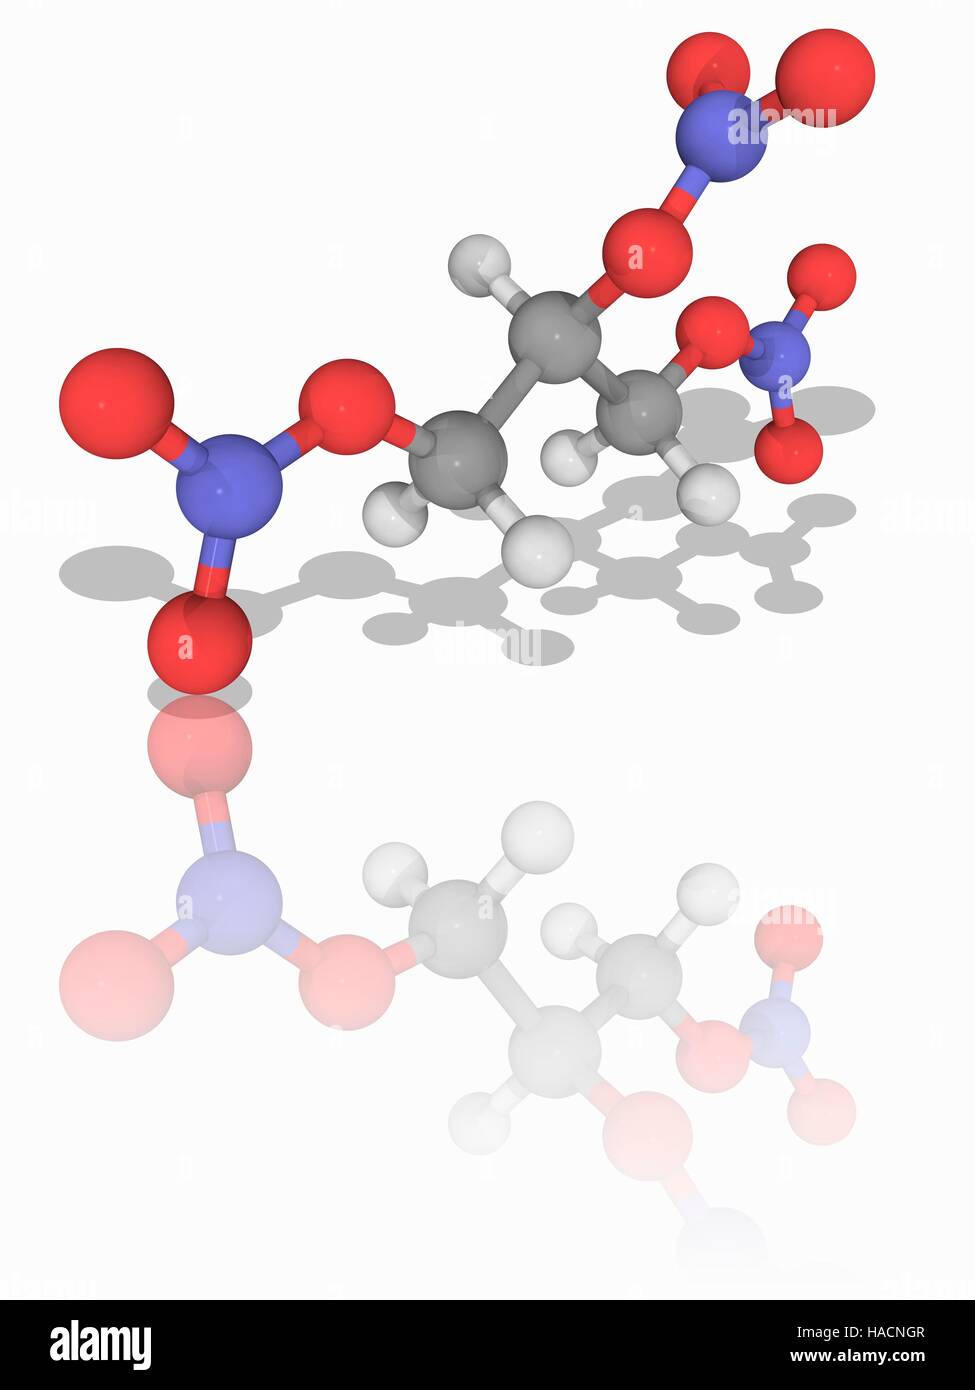 La nitroglicerina. Il modello molecolare della sostanza chimica nitroglicerina (C3.H5.N3.O9). Questo incolore, oleose, esplosivo liquido viene utilizzato anche dal punto di vista medico come un vasodilatatore per trattare condizioni di cuore. Gli atomi sono rappresentati da sfere e sono codificati a colori: carbonio (grigio), Idrogeno (bianco), Azoto (blu) e ossigeno (rosso). Illustrazione. Foto Stock